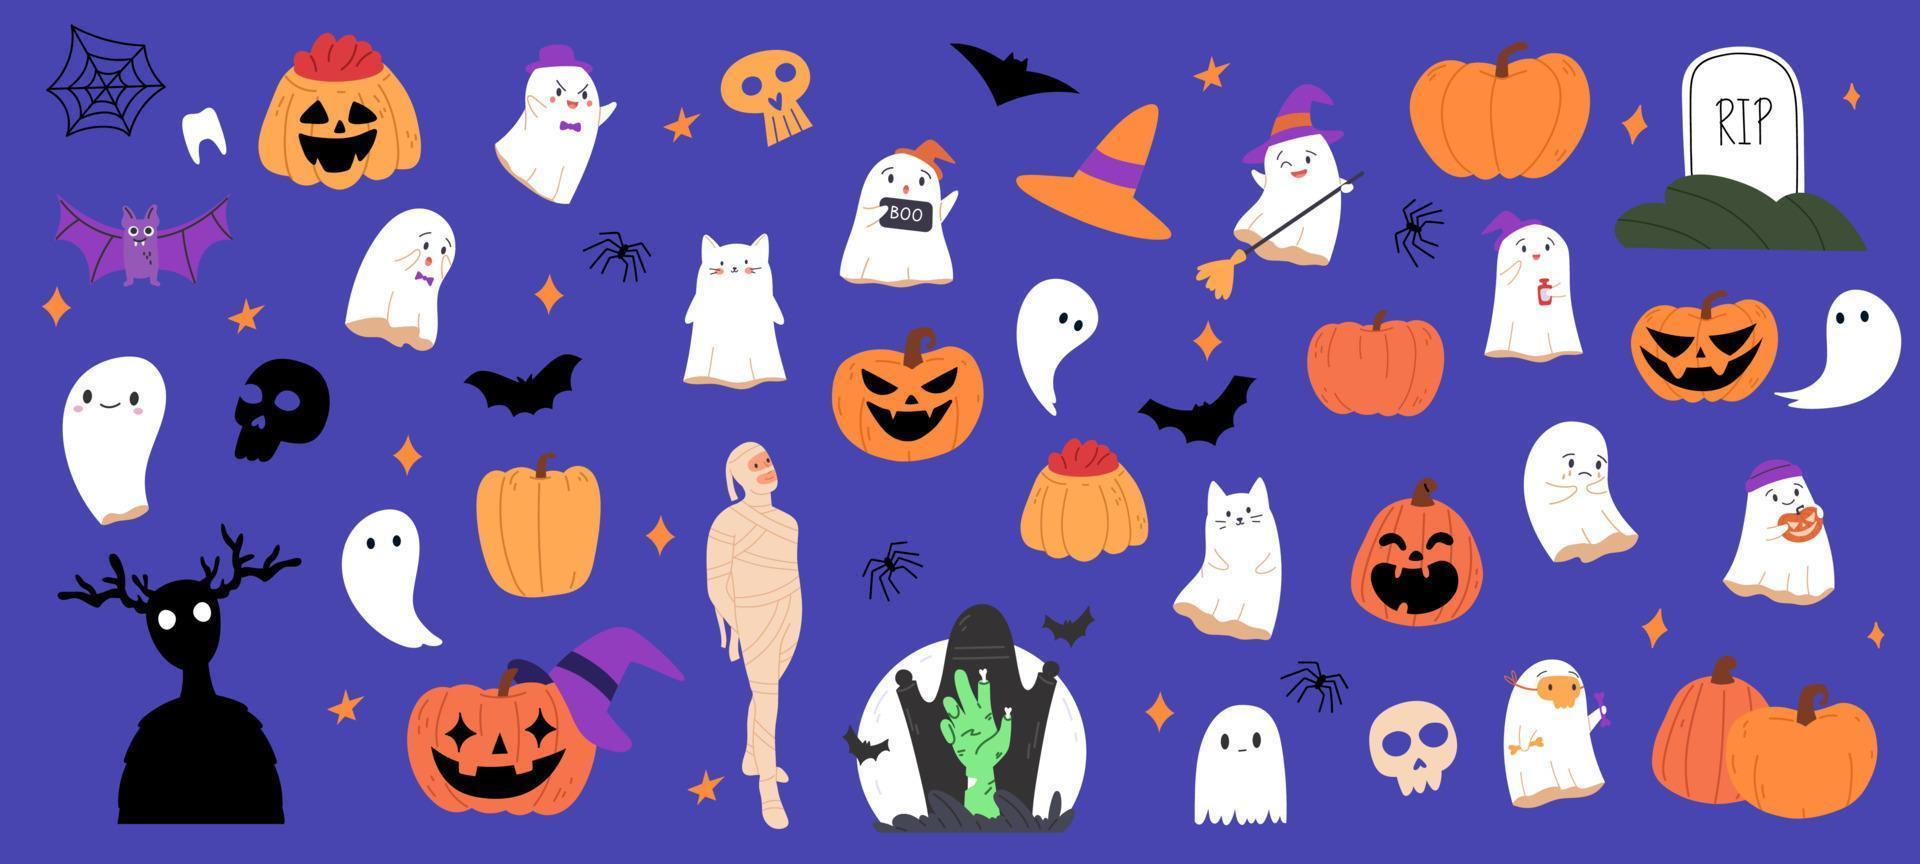 samling av halloween läskigt tecken och grejer. helloween bunt med pumpa, hatt, spöken för oktober fest. barnslig halloween uppsättning. platt vektor illustration